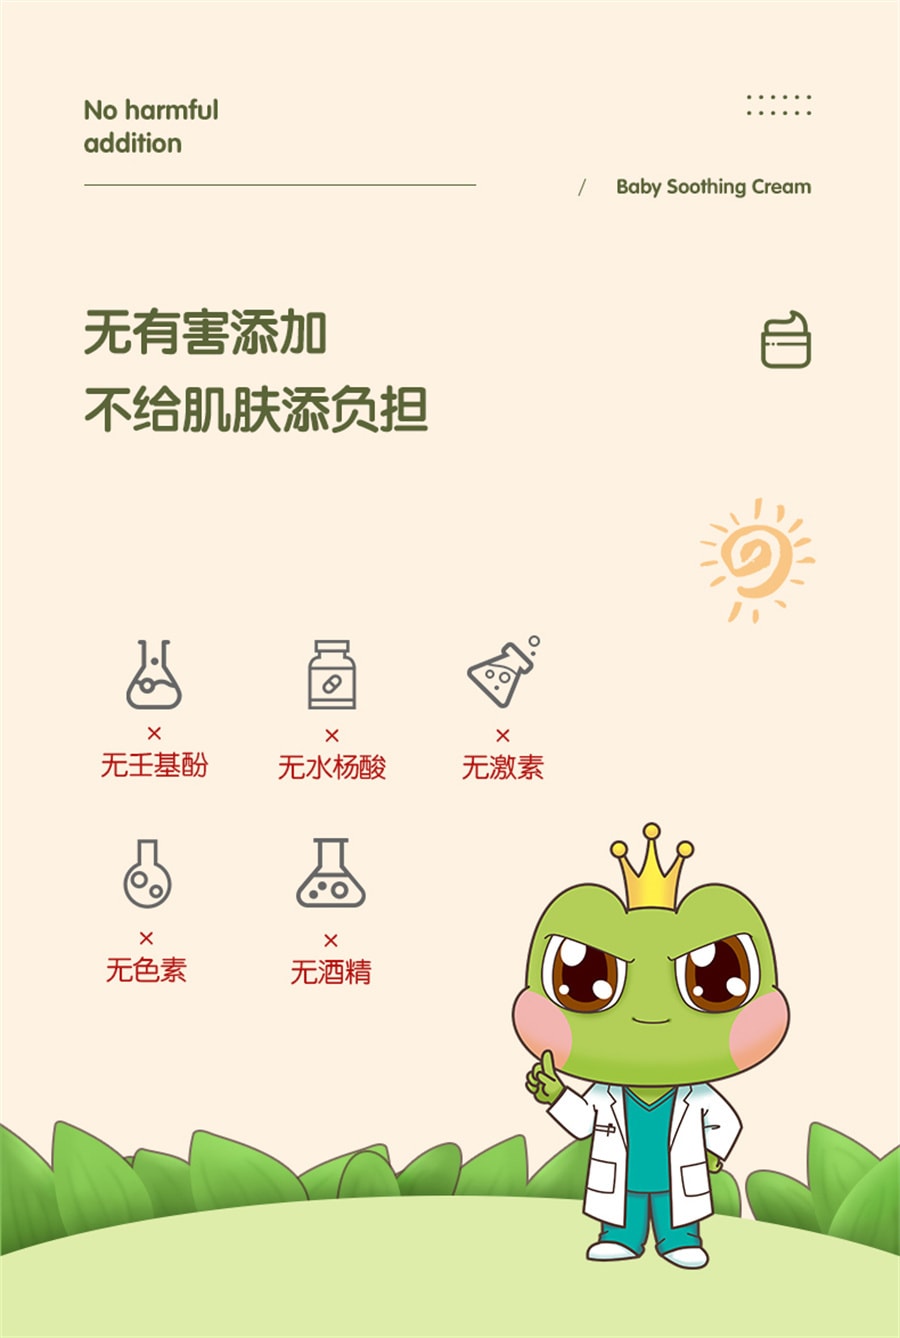 【中國直郵】青蛙王子 兒童乳霜保濕乳嬰兒寶寶鮮奶精華護膚補水保濕霜 51g/盒